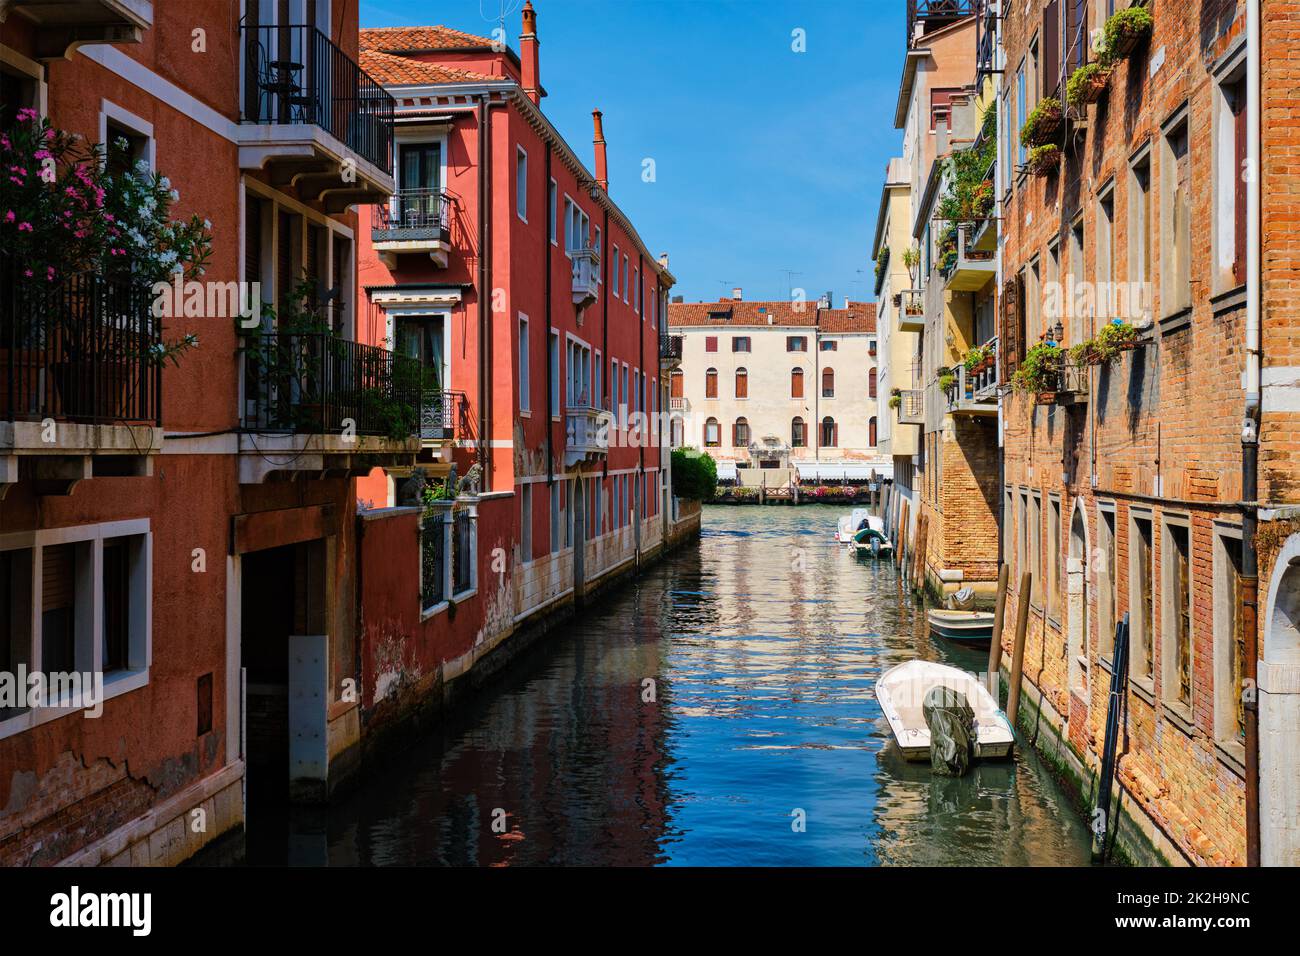 Narrow canal with gondola in Venice, Italy Stock Photo